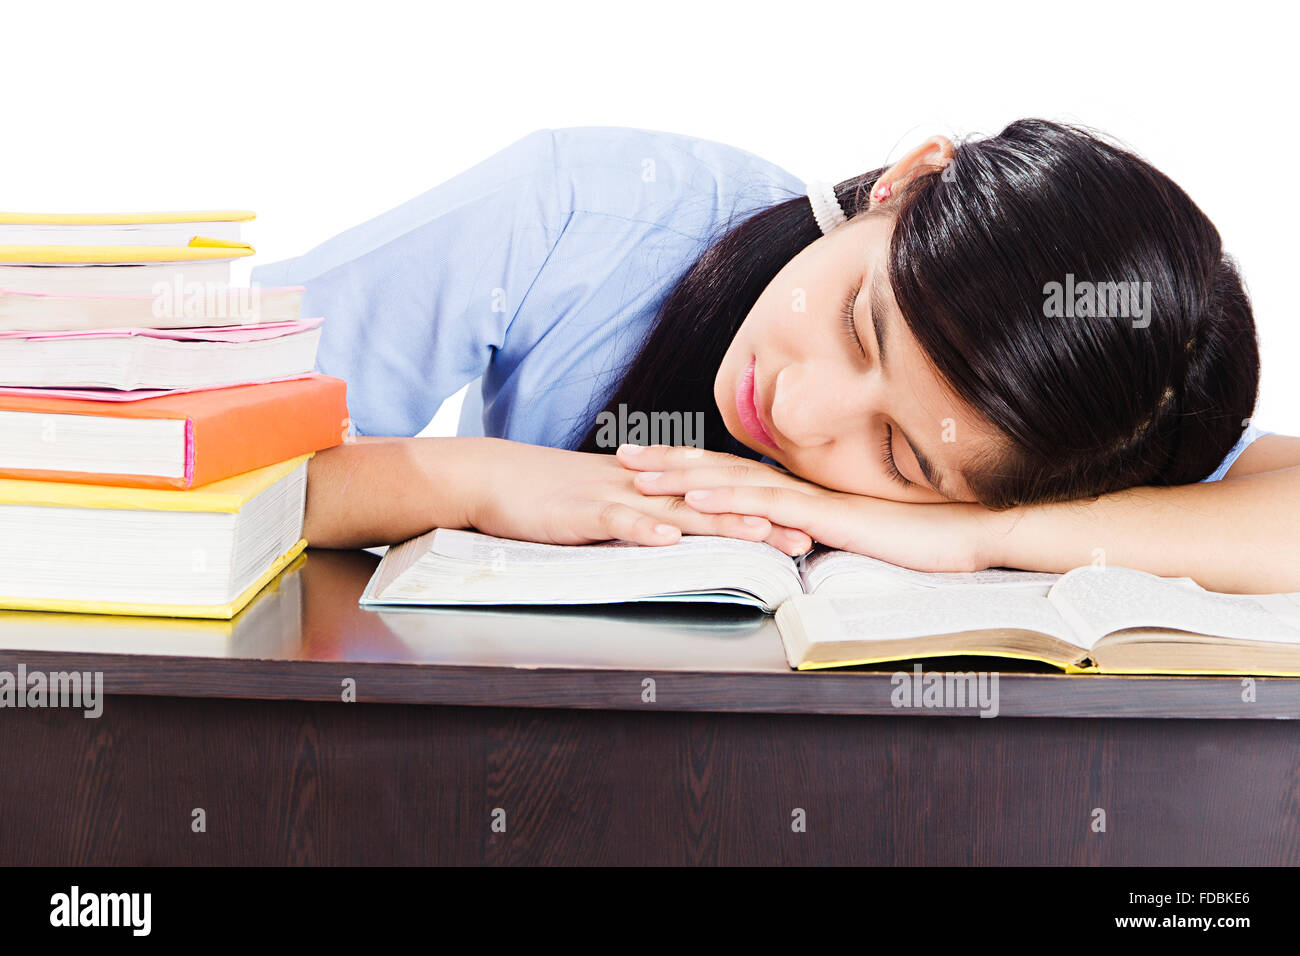 1 Giovane ragazza adolescente scuola studente prenota studiando incurante del sonno Foto Stock